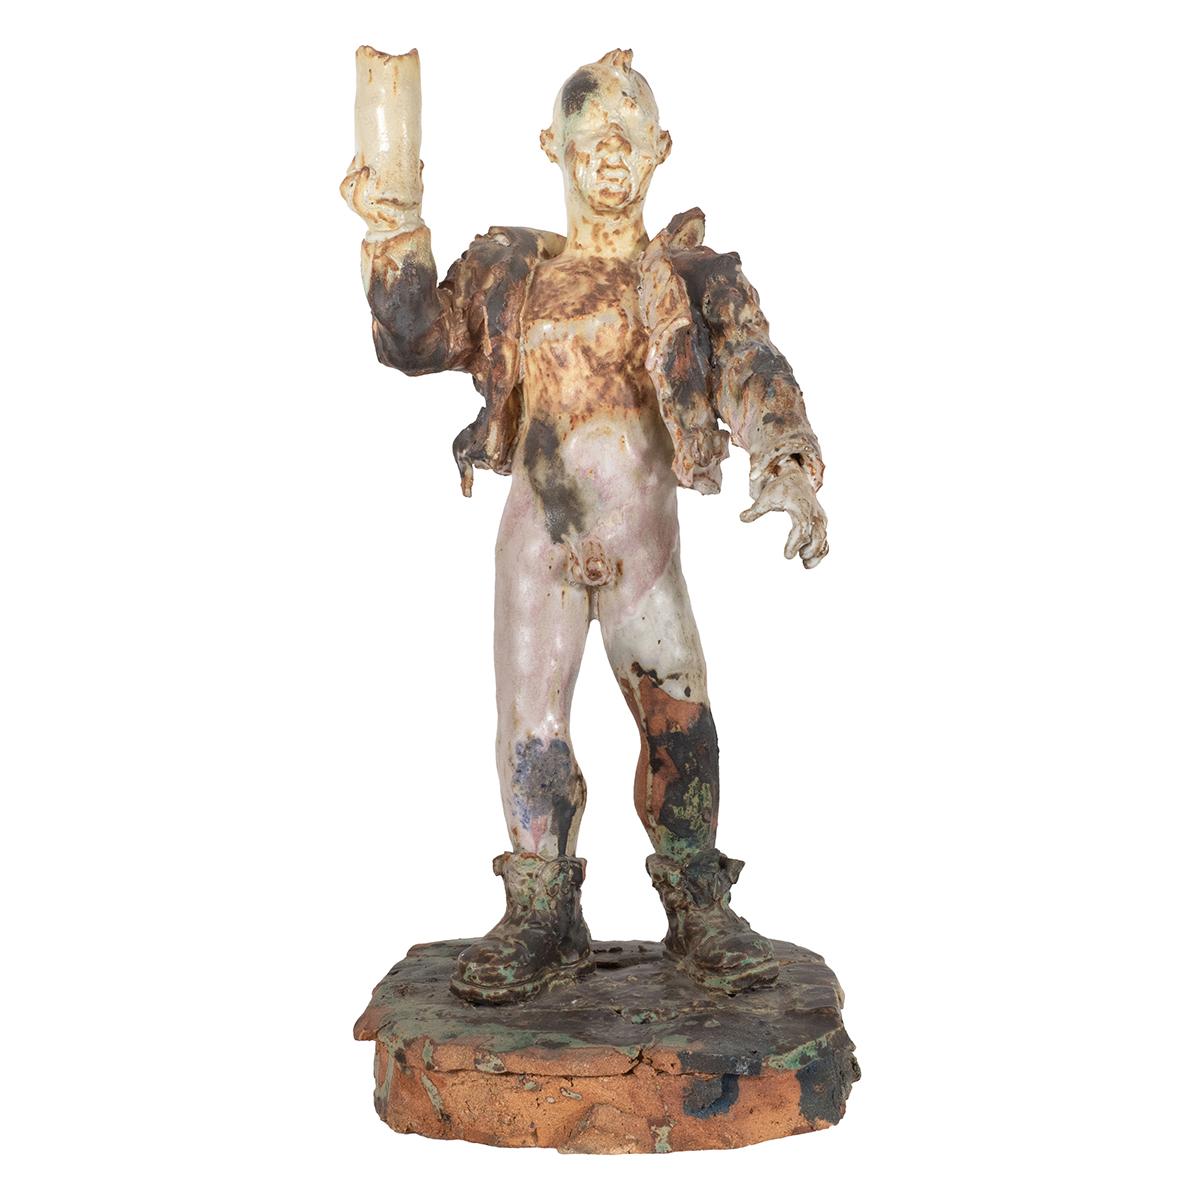 Skurrile Brunnenskulptur aus Keramik, die einen Mann ohne Hose darstellt.